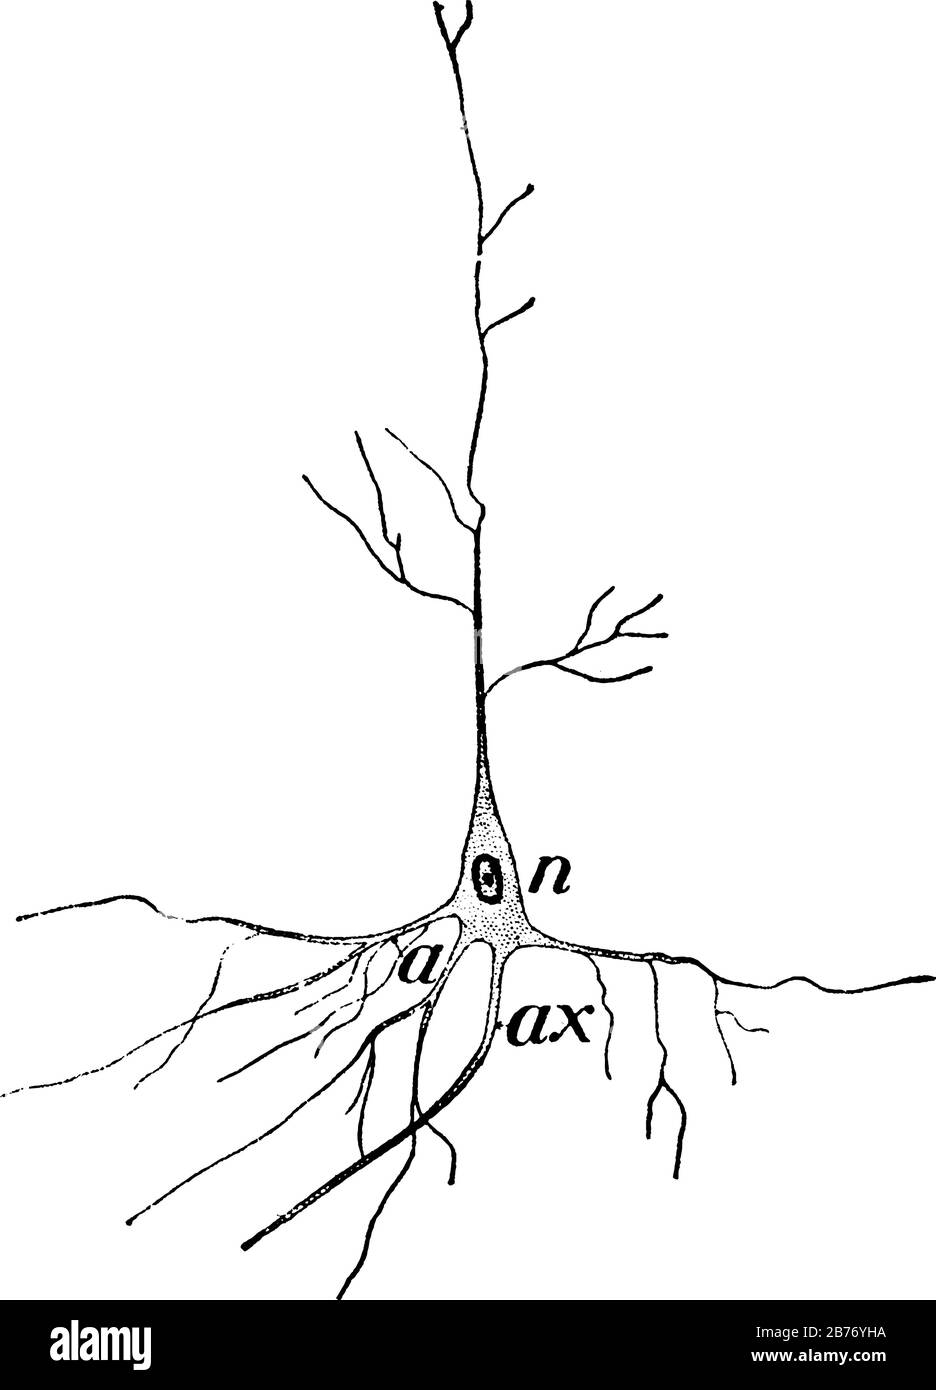 es una imagen de la célula nerviosa, núcleo del nervio mostrado aquí, mostrando tres imágenes diferentes en la célula nerviosa en ella, dibujo de línea vintage o grabado Ilustración del Vector